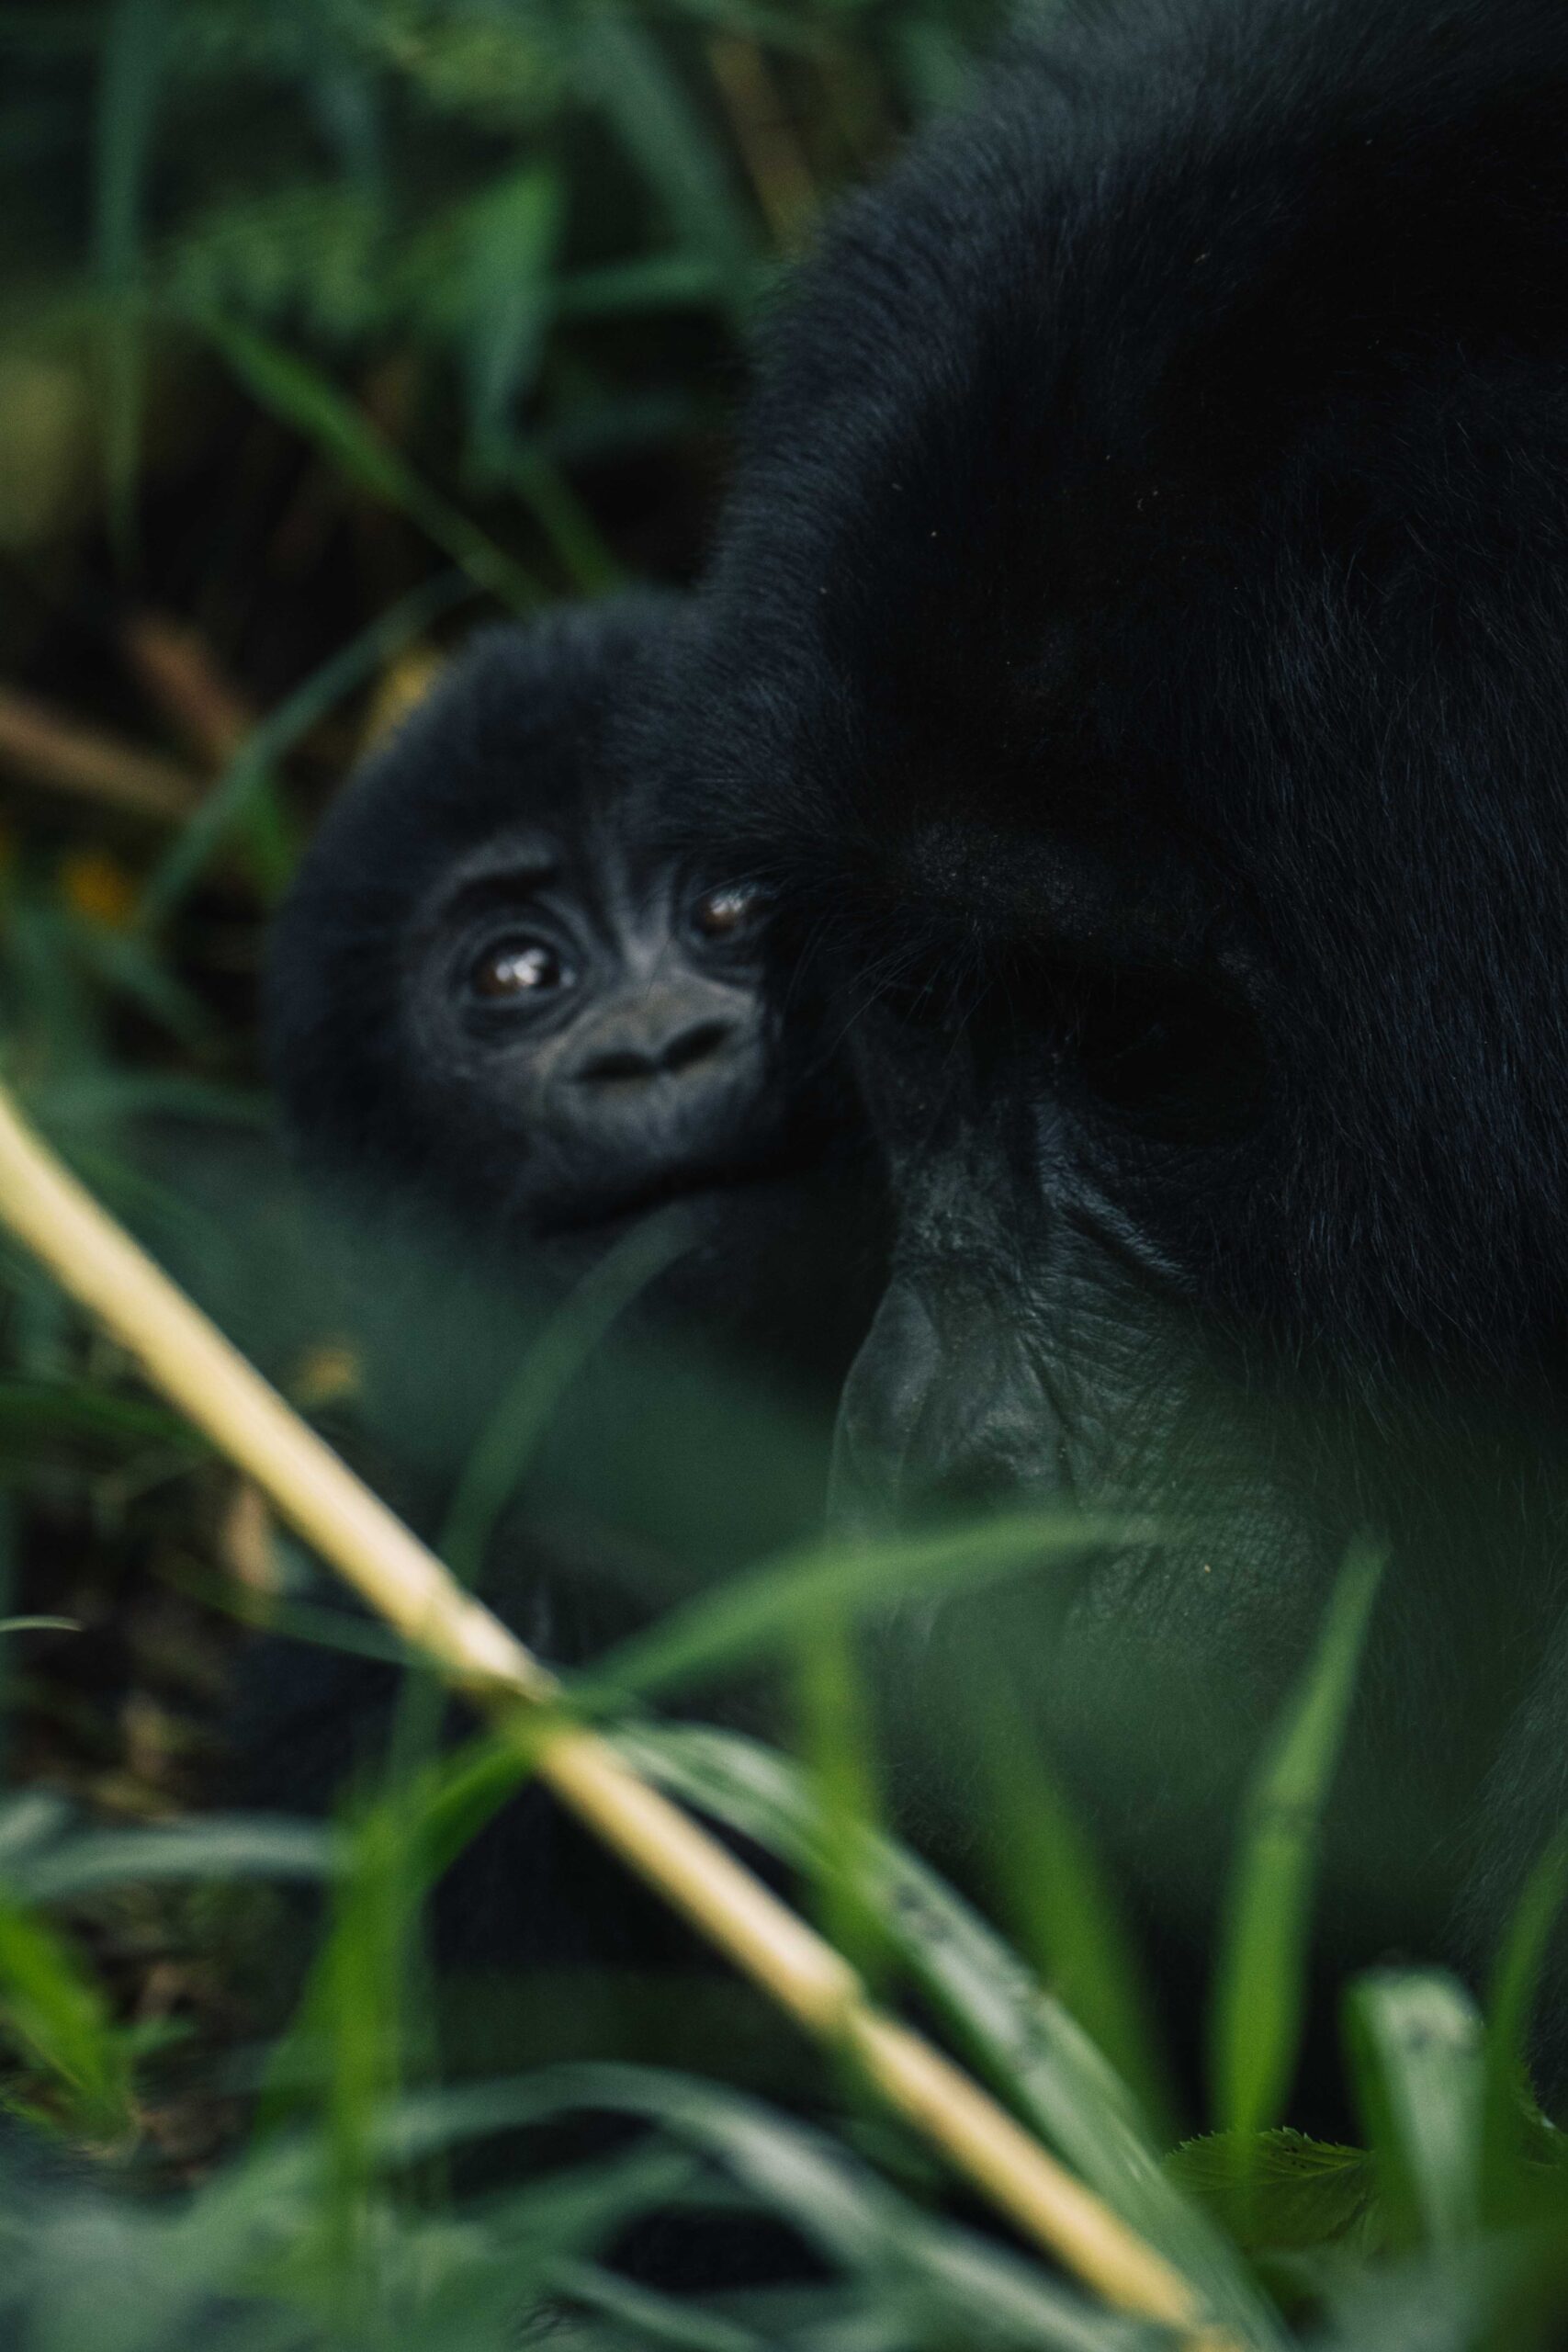 Gorilla in de jungle van Bwindi National Park Oeganda